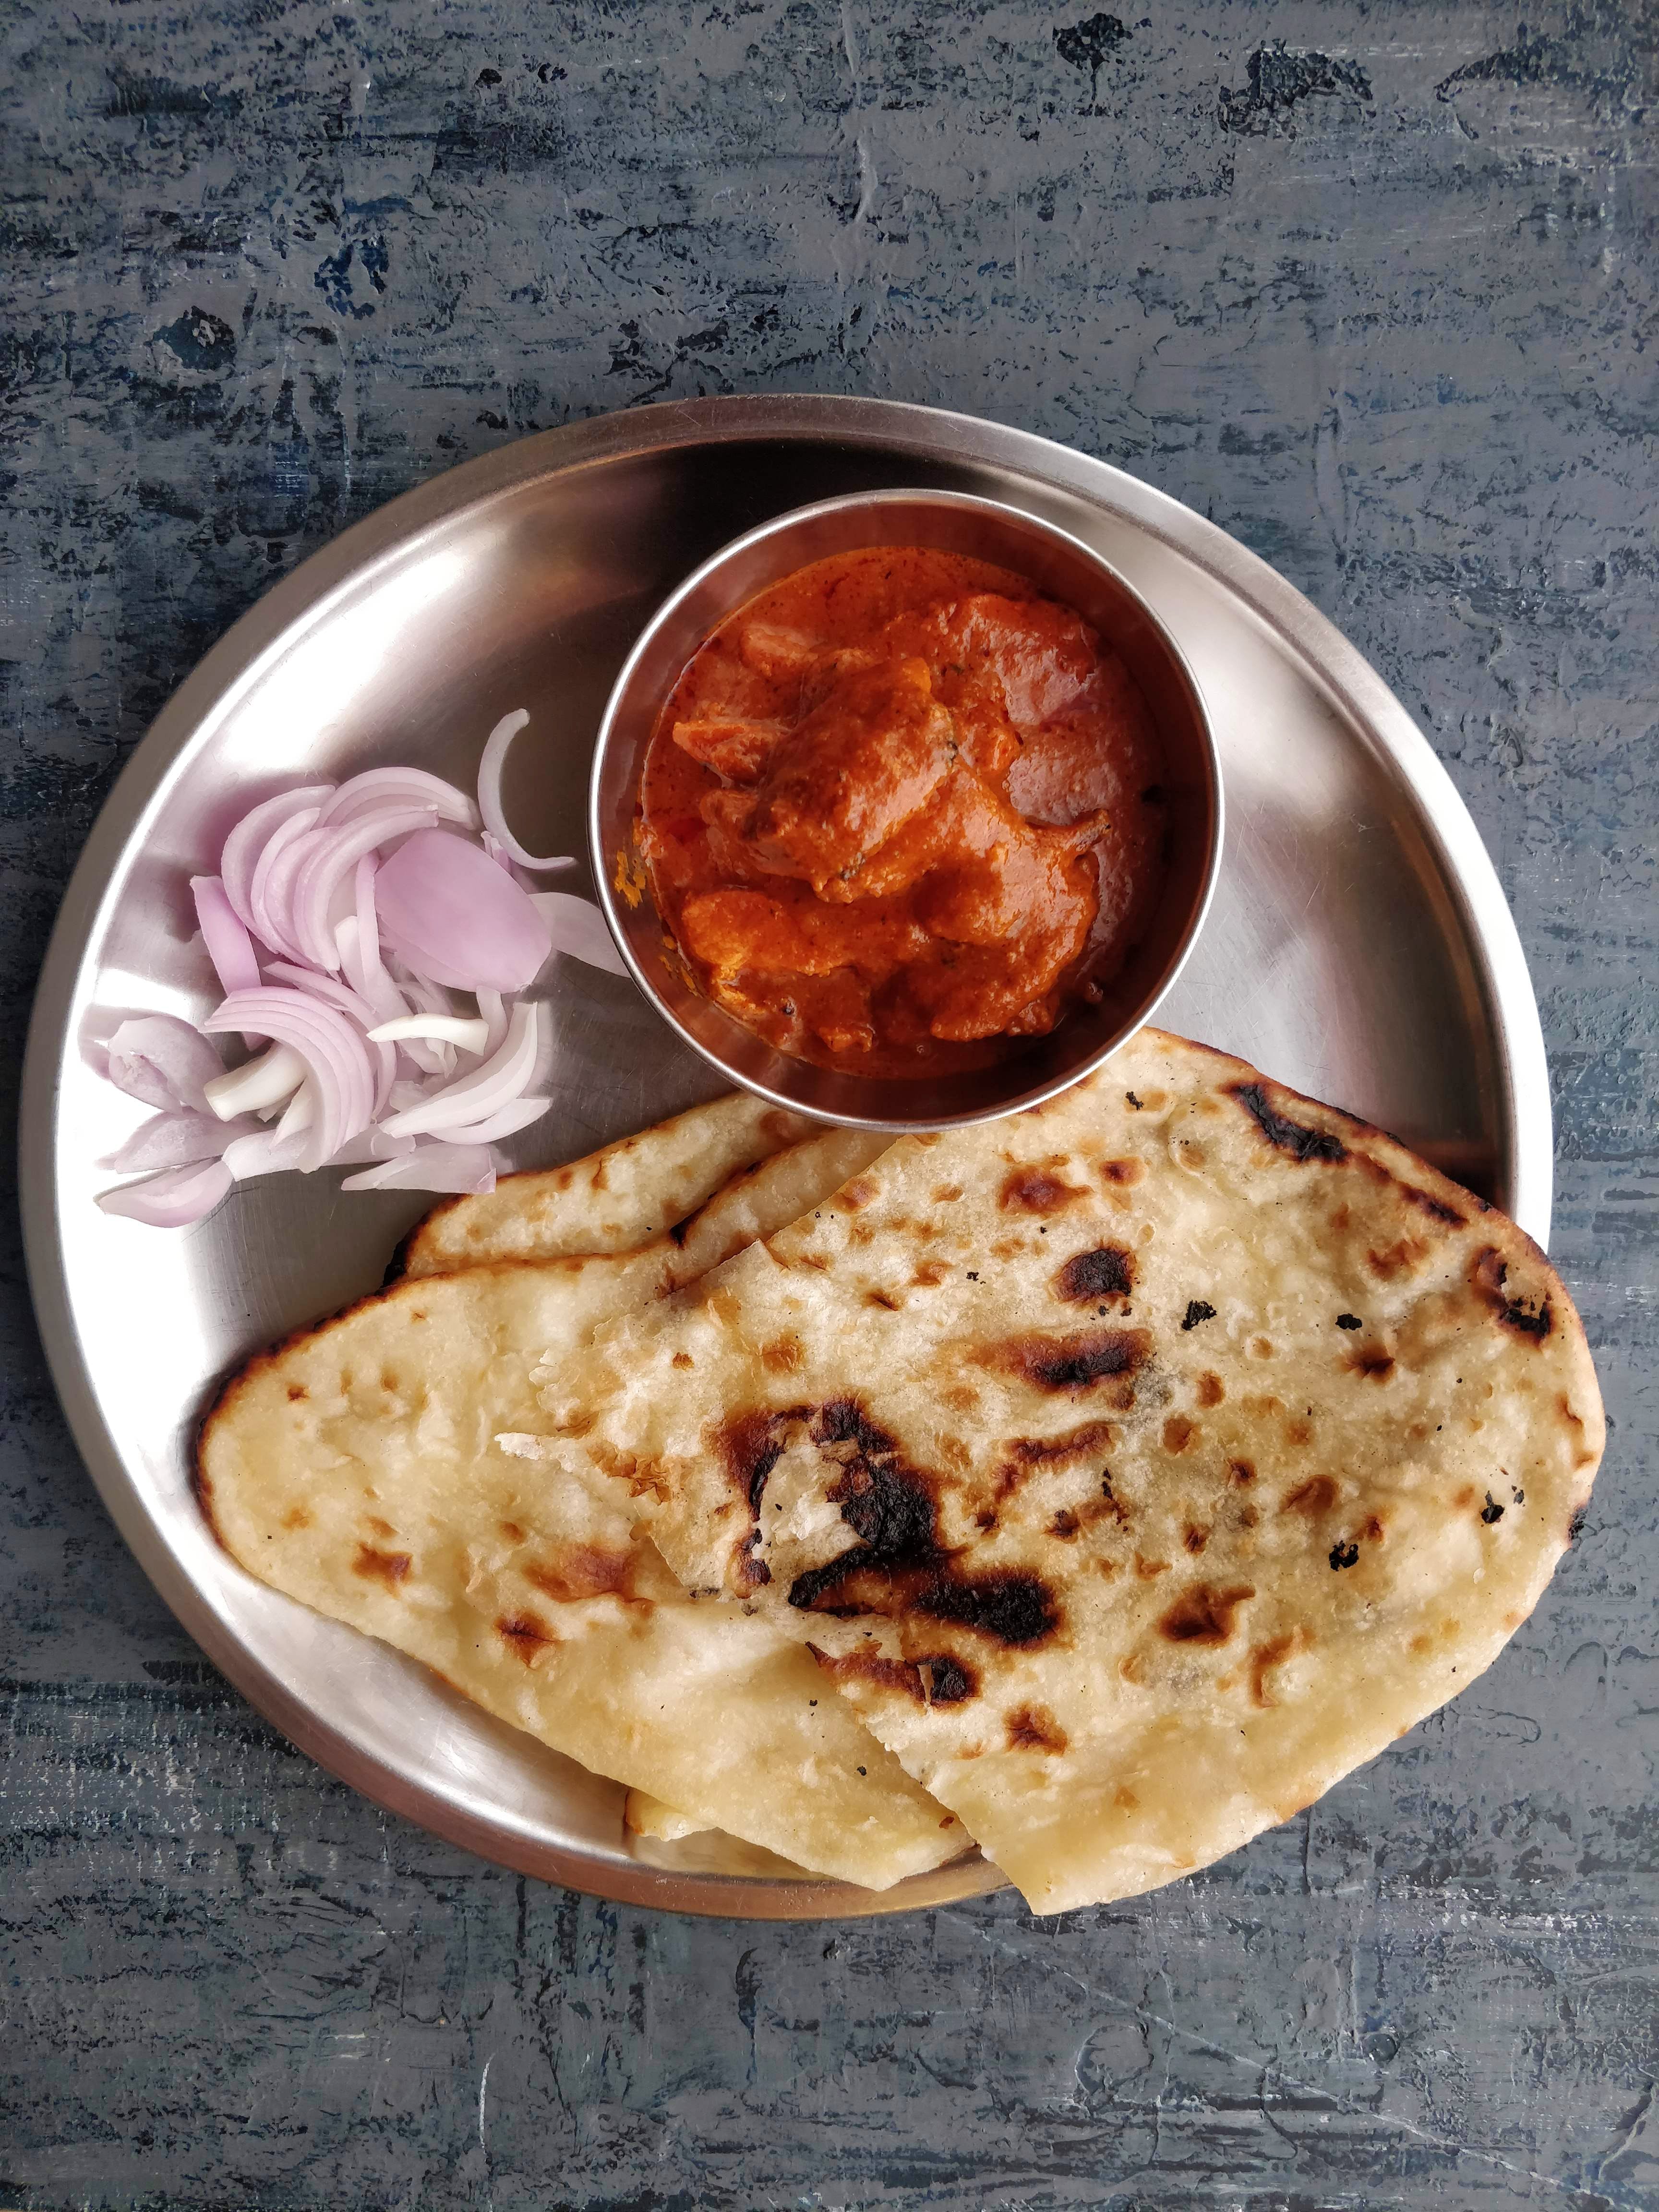 Dish,Food,Naan,Cuisine,Kulcha,Ingredient,Roti,Chapati,Roti canai,Flatbread